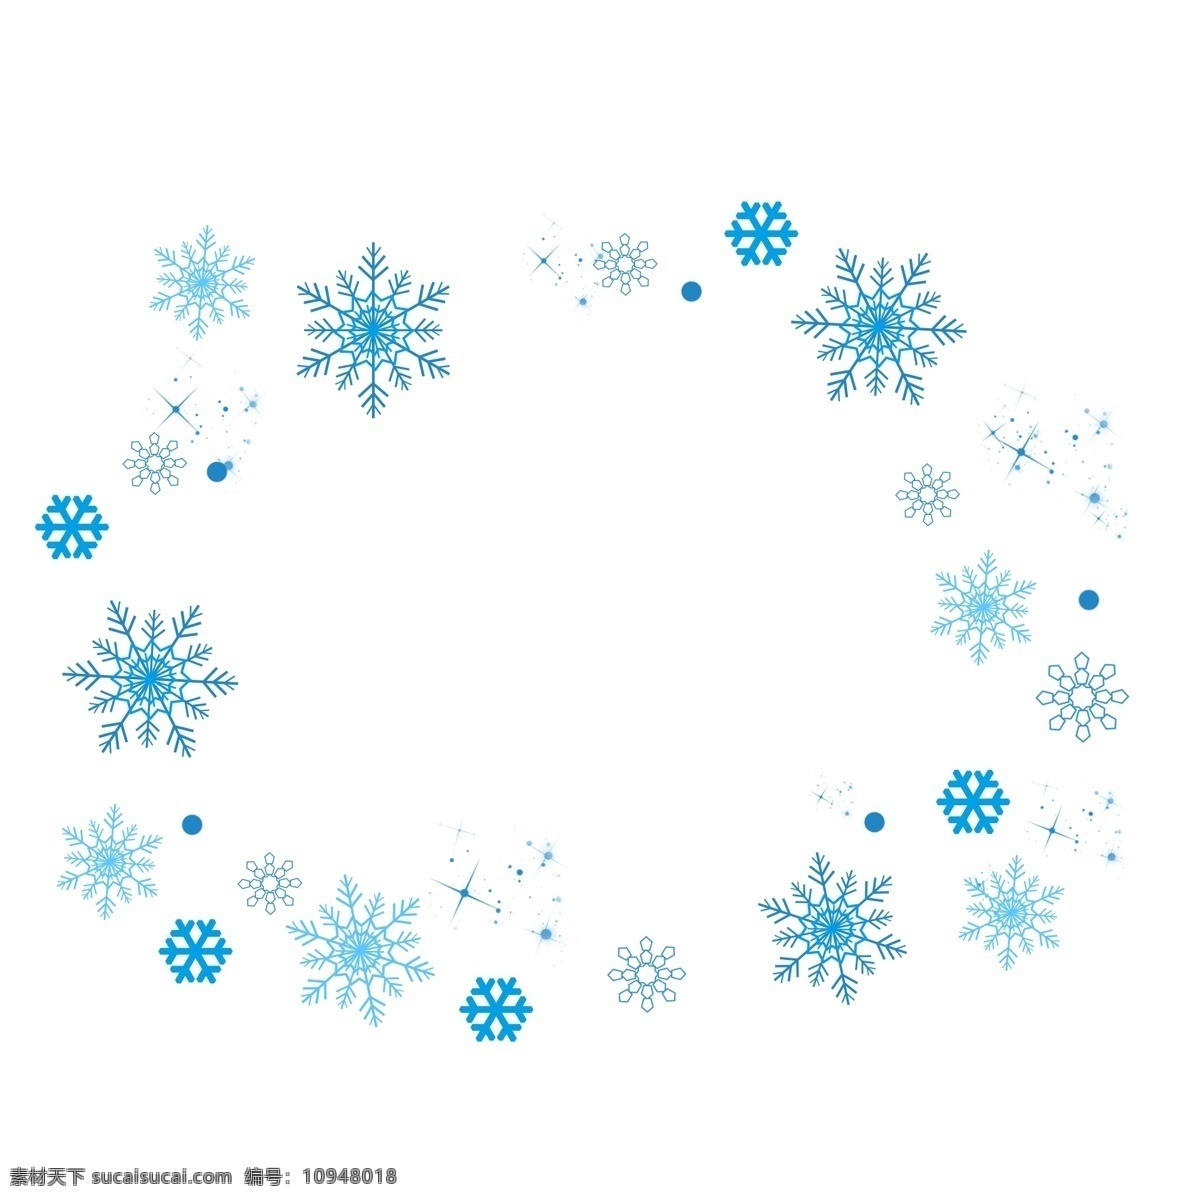 冬天 雪 手绘 飘 蓝色 雪花 冬季 下雪 浪漫 装饰 飘雪